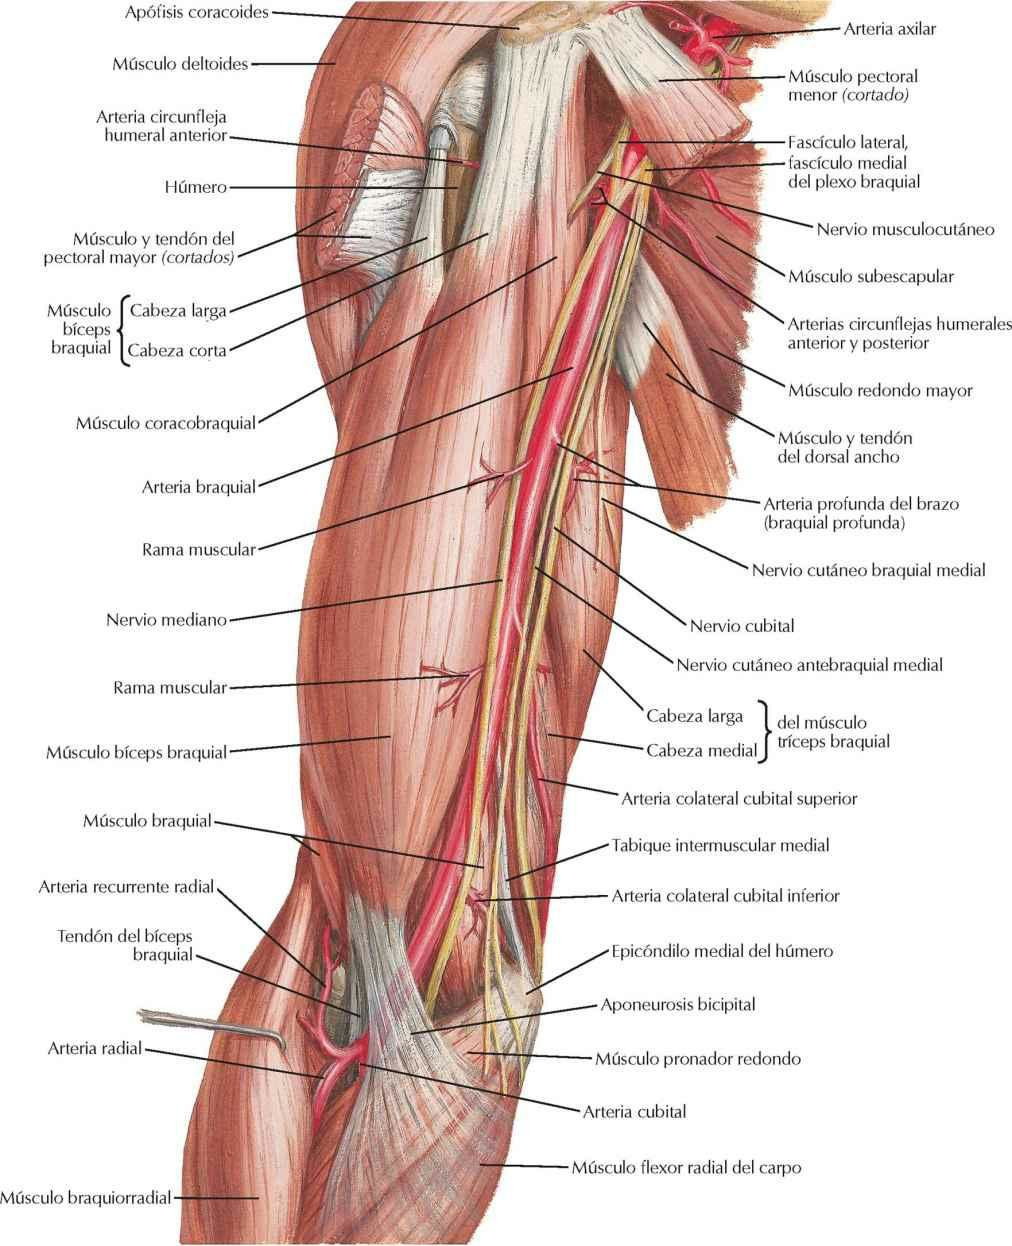 Arteria braquial in situ